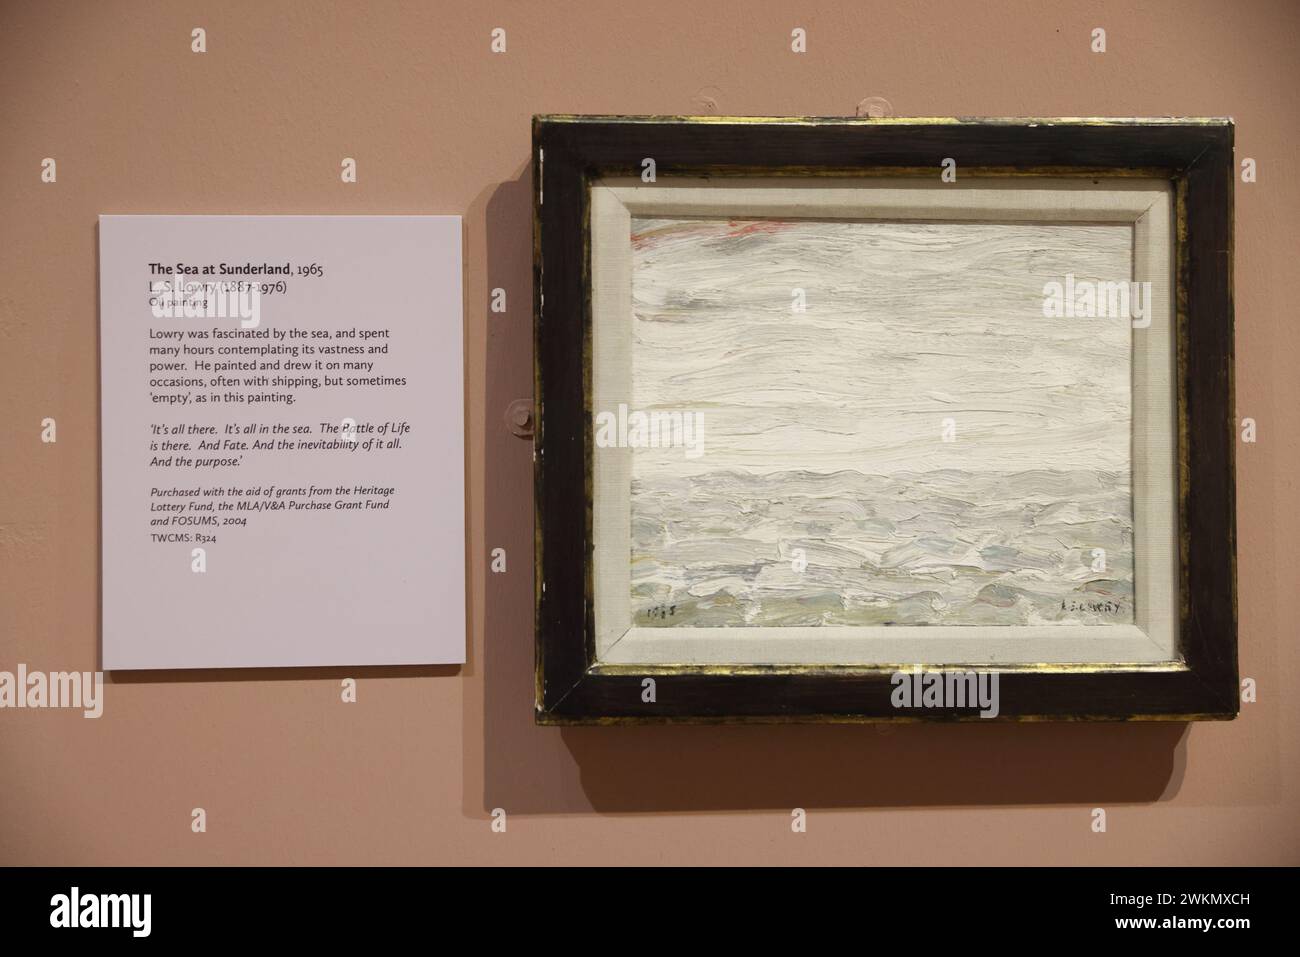 Quando si trovava a Sunderland, l'artista L.S. Lowry visitava spesso il Museum & Art Gallery, che ora ospita una collezione dei suoi dipinti, a Tyne&Wear, Inghilterra settentrionale. Foto Stock